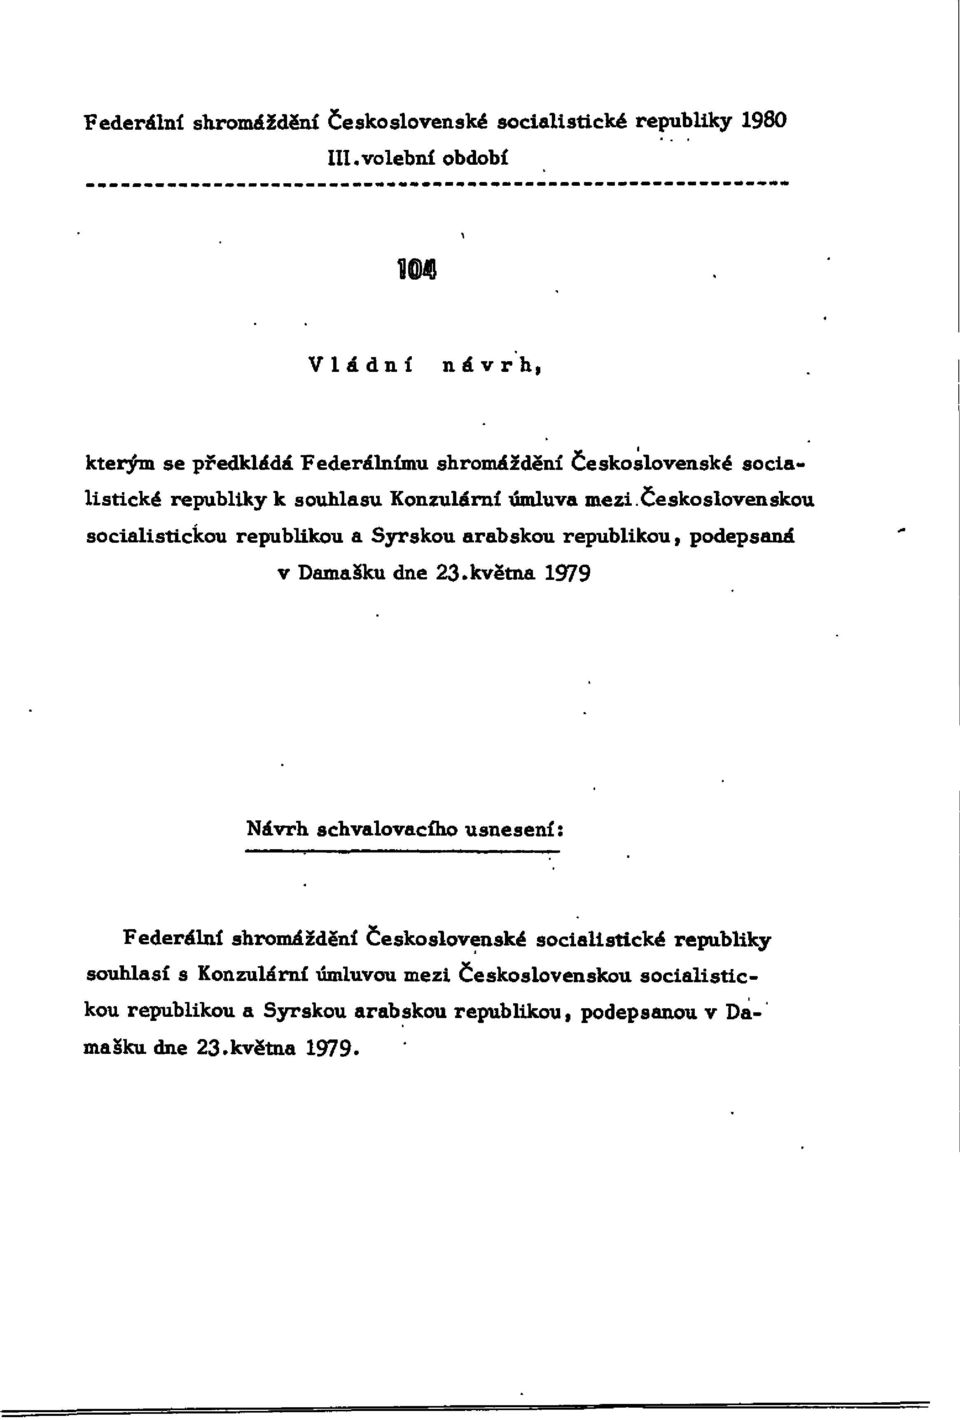 úmluva mezi Československou socialistickou republikou a Syrskou arabskou republikou, podepsaná v Damašku dne 23.